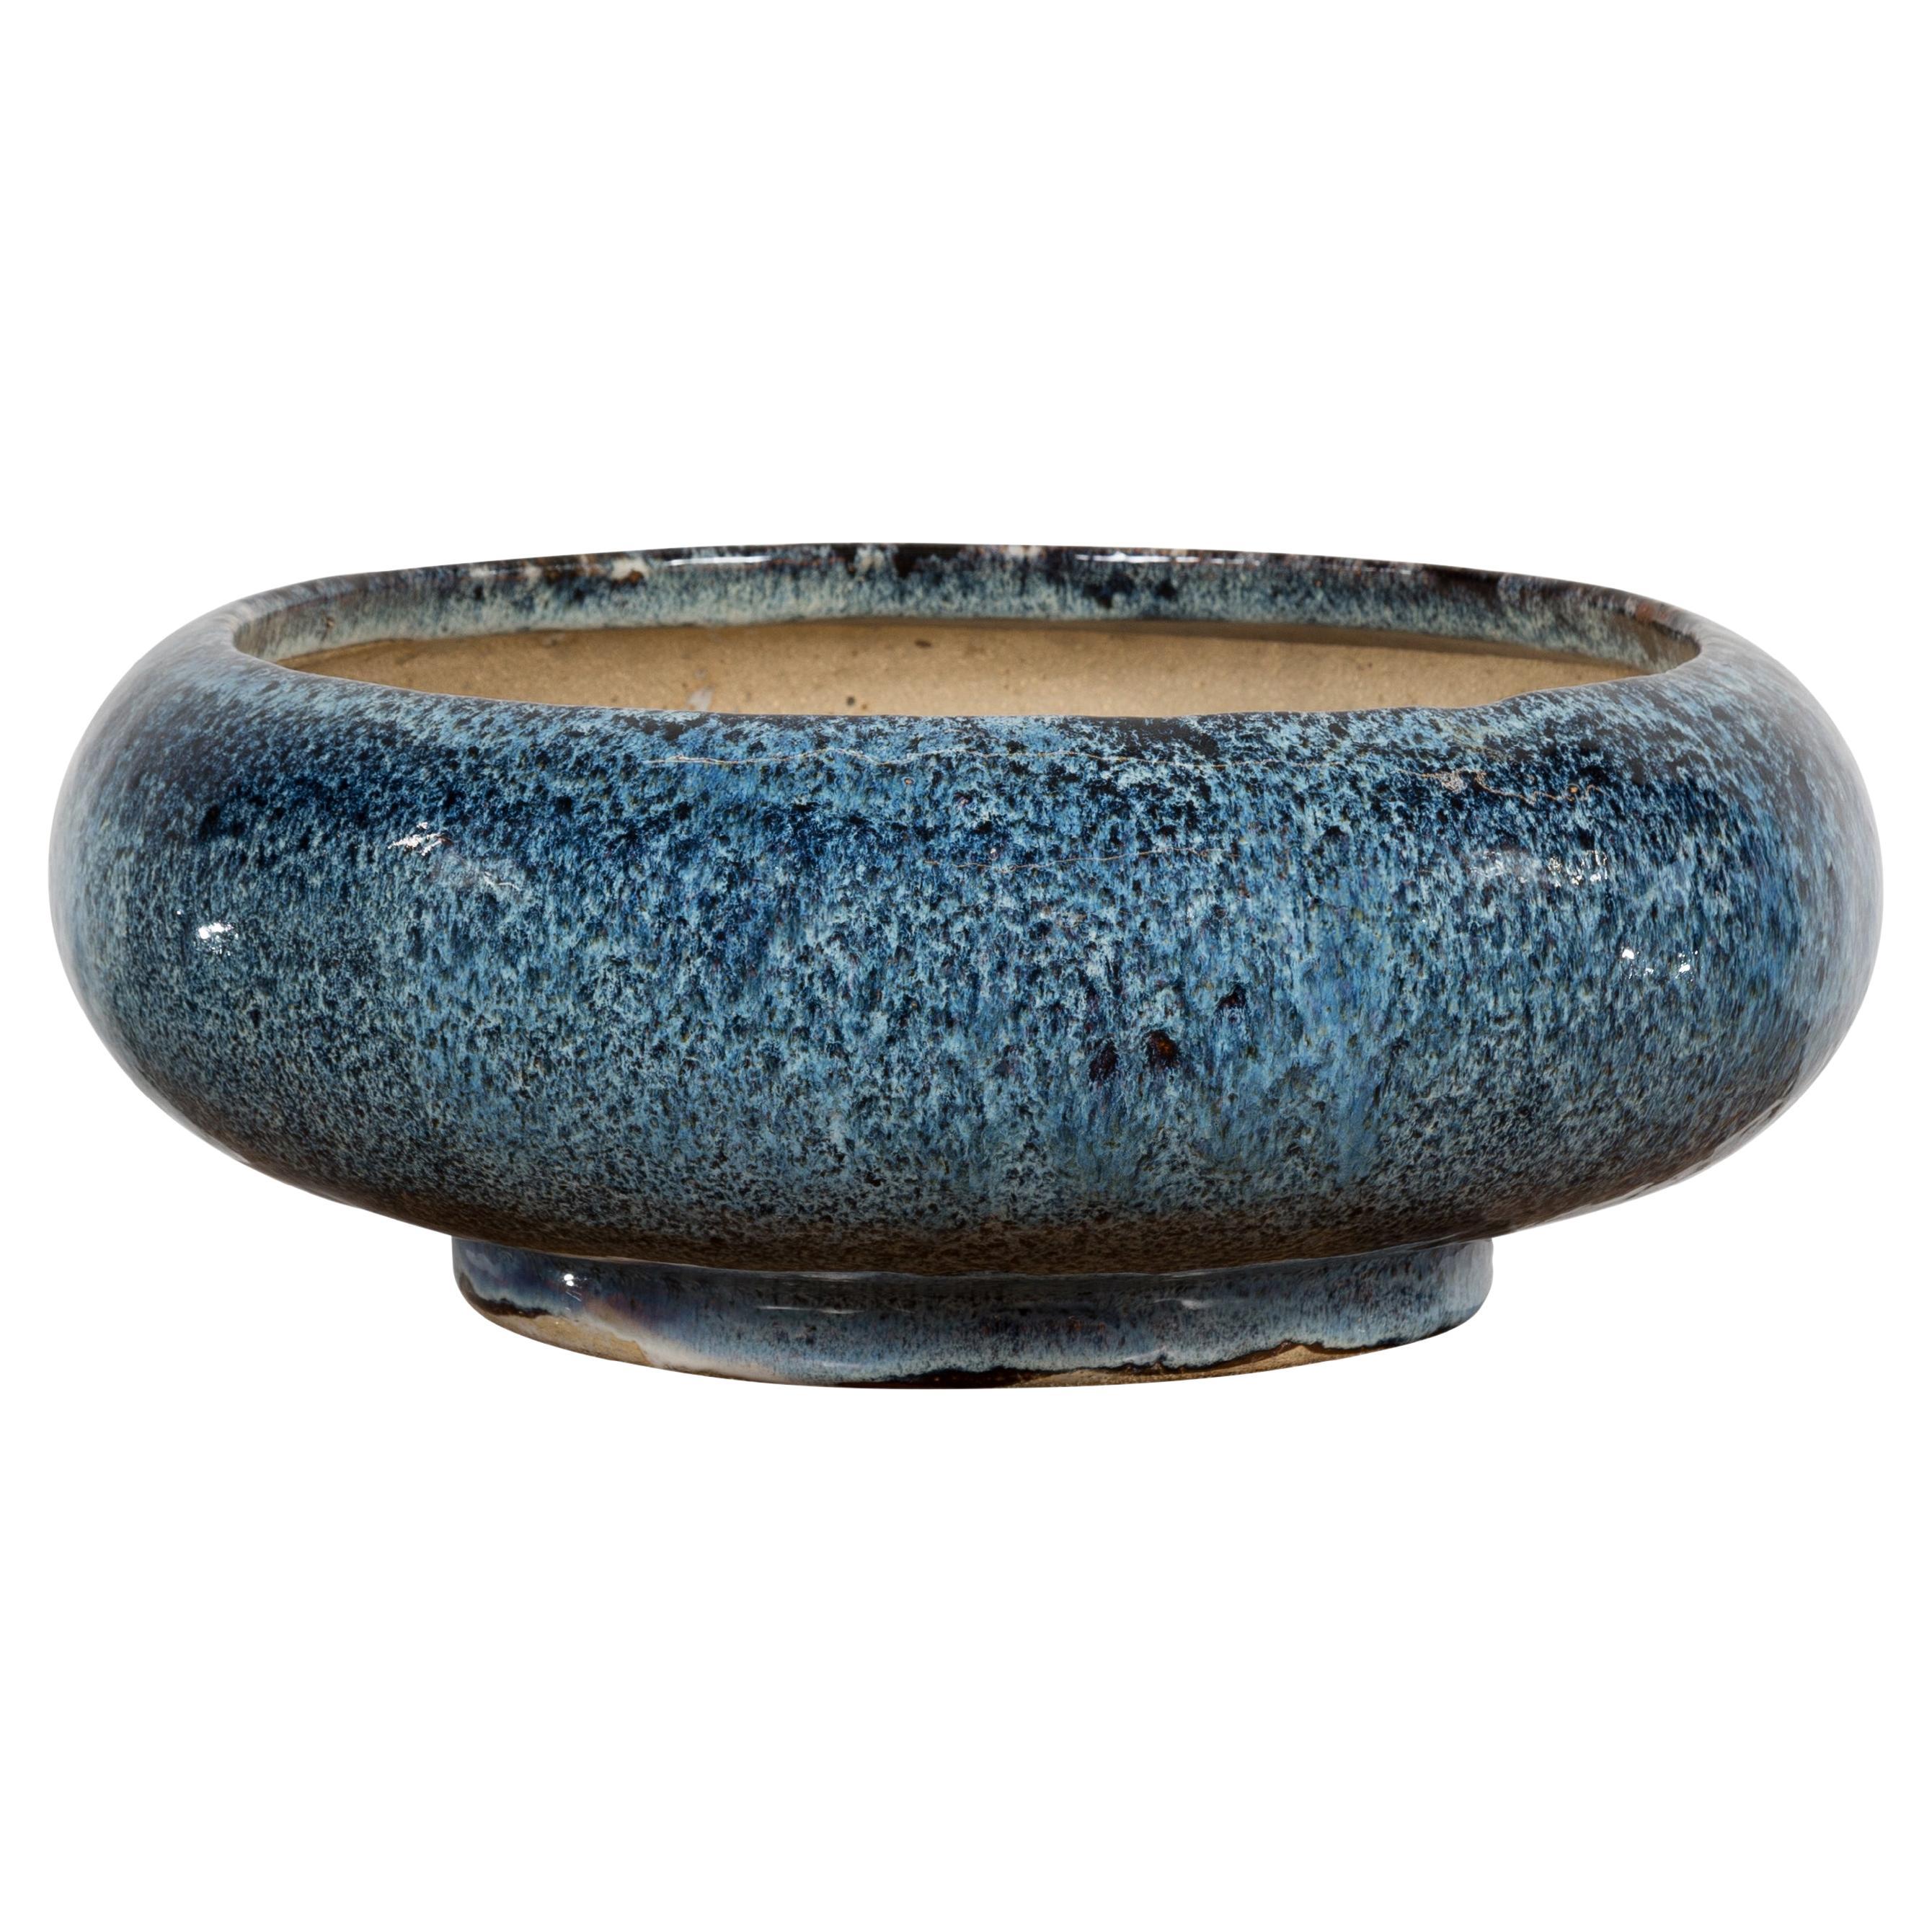 Chinesisches Vintage-Pflanzgefäß aus Keramik mit blauer Glasur